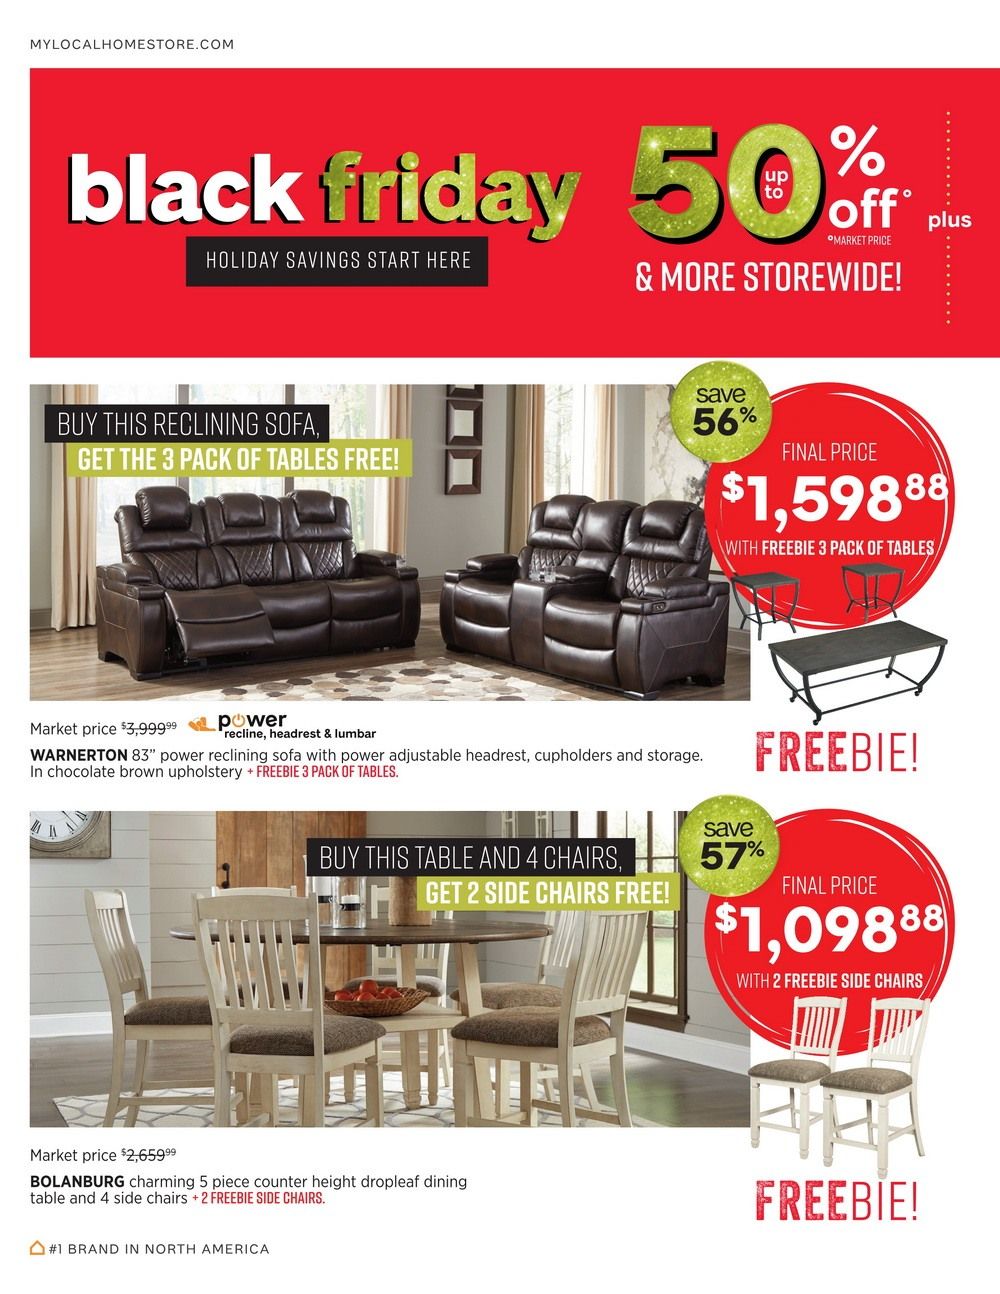 Ashley Furniture HomeStore Black Friday Ad Nov 16 Nov 27, 2020